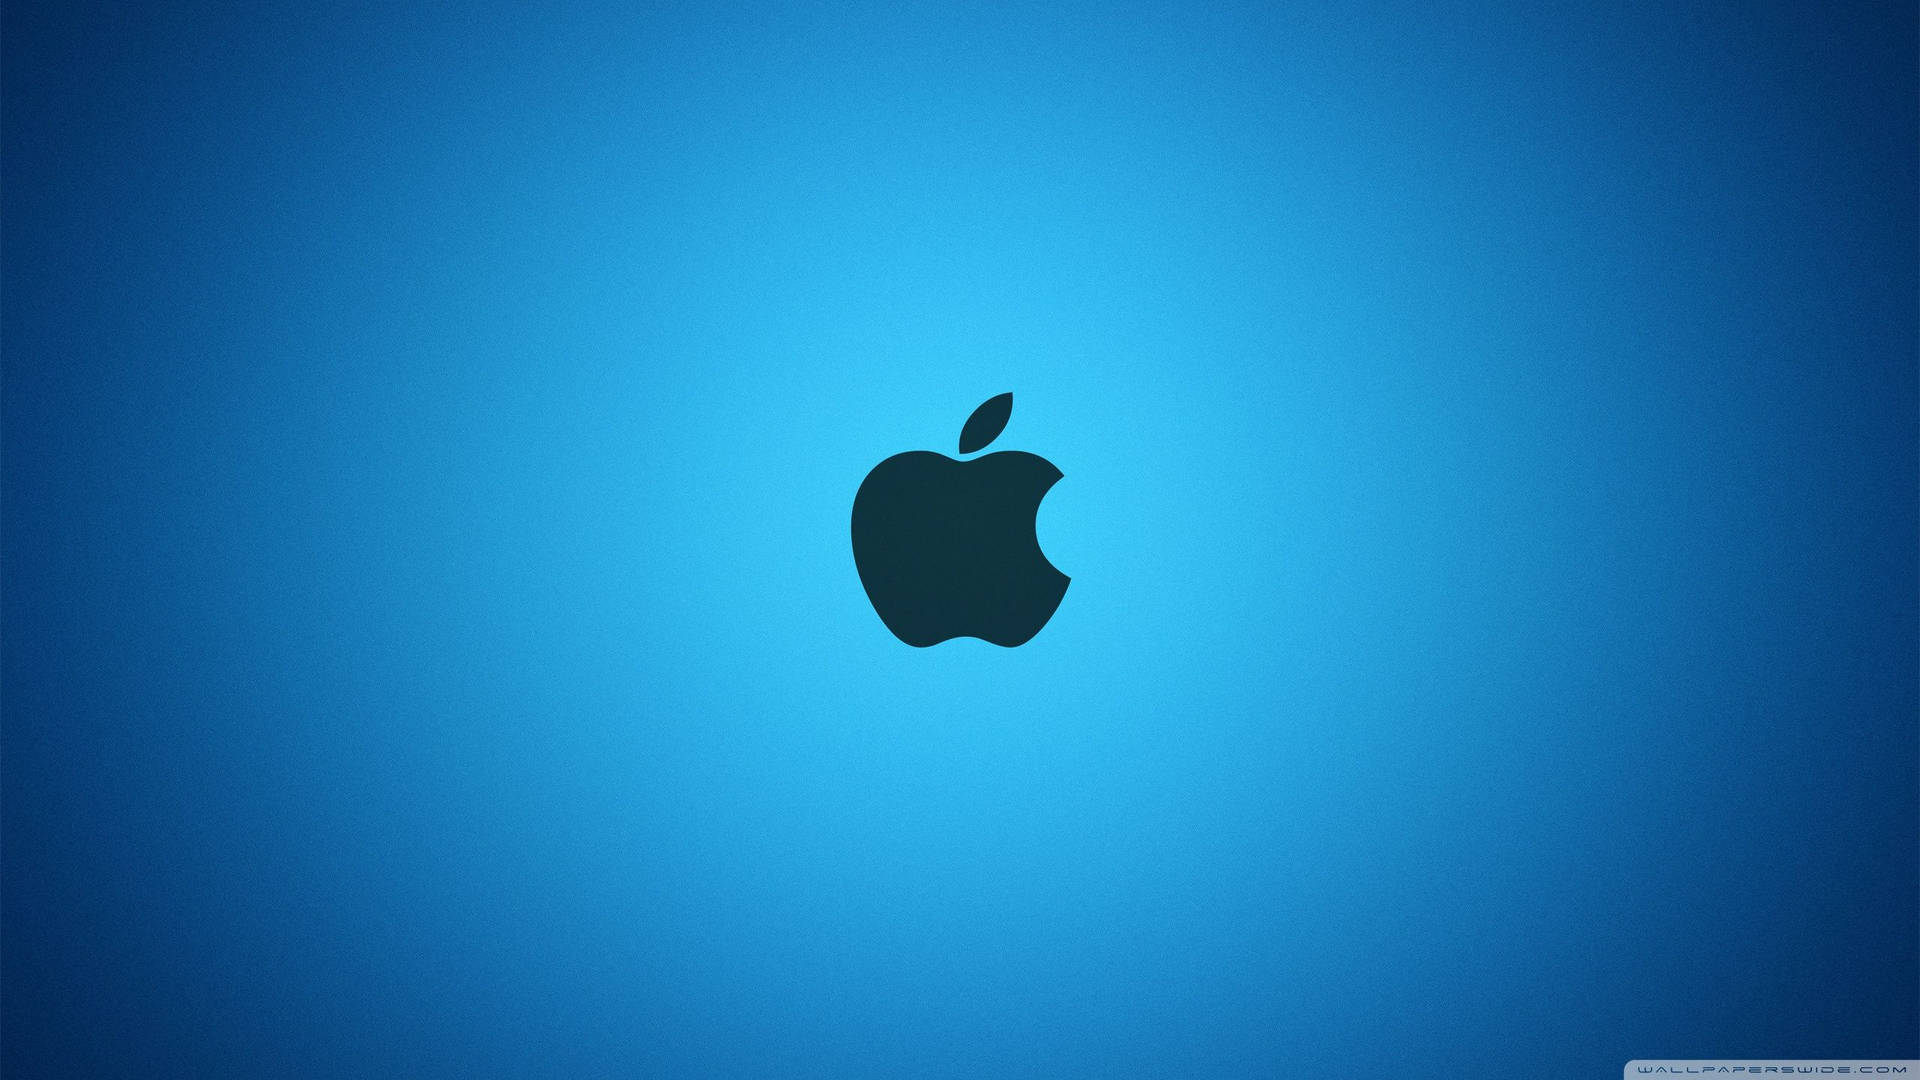 Dark Apple Logo On Bright Blue Wallpaper